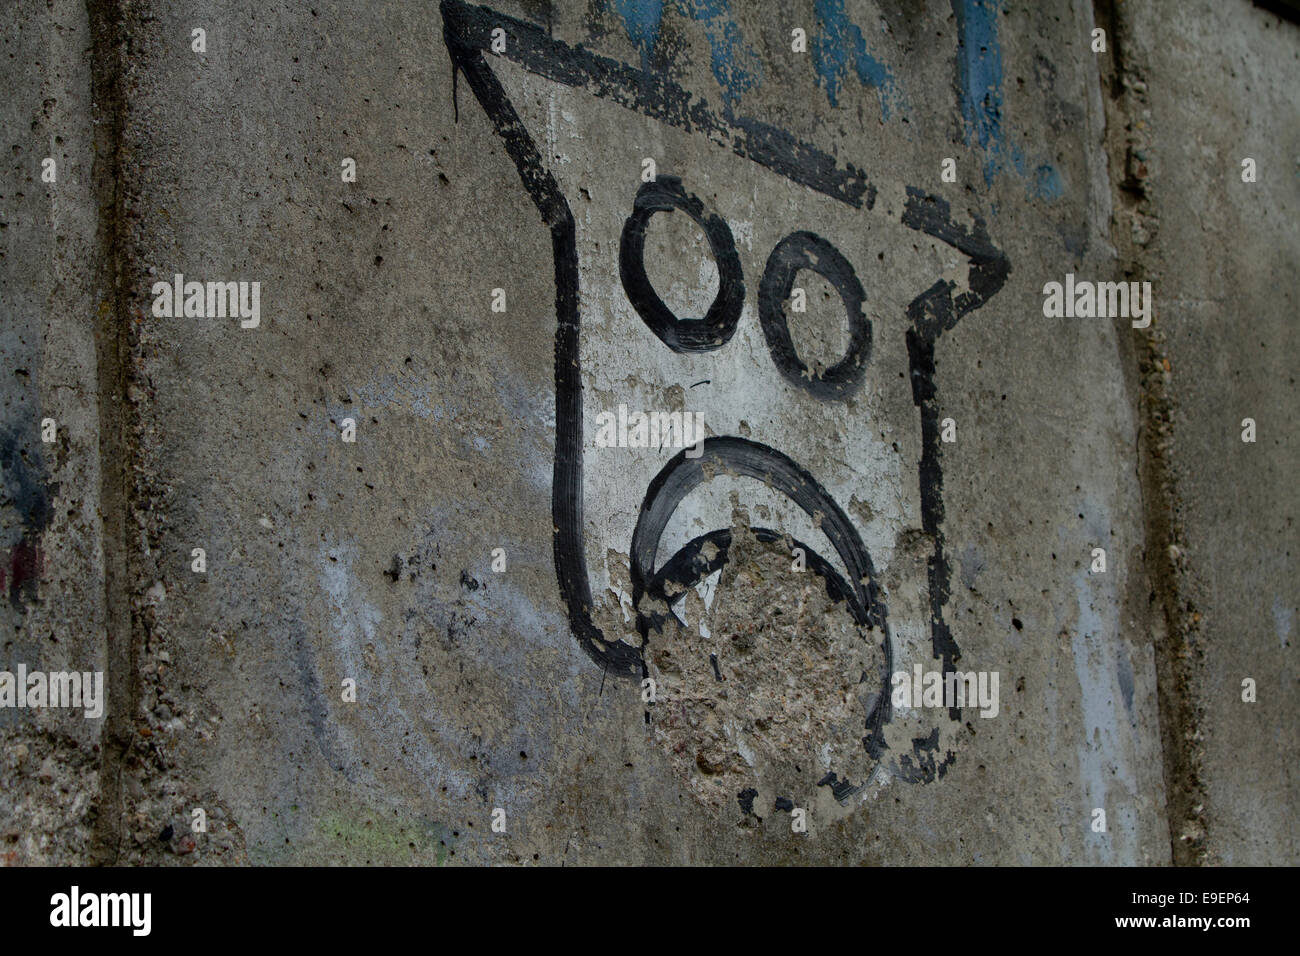 simple robot graffiti face Berlin wall urban decay Stock Photo